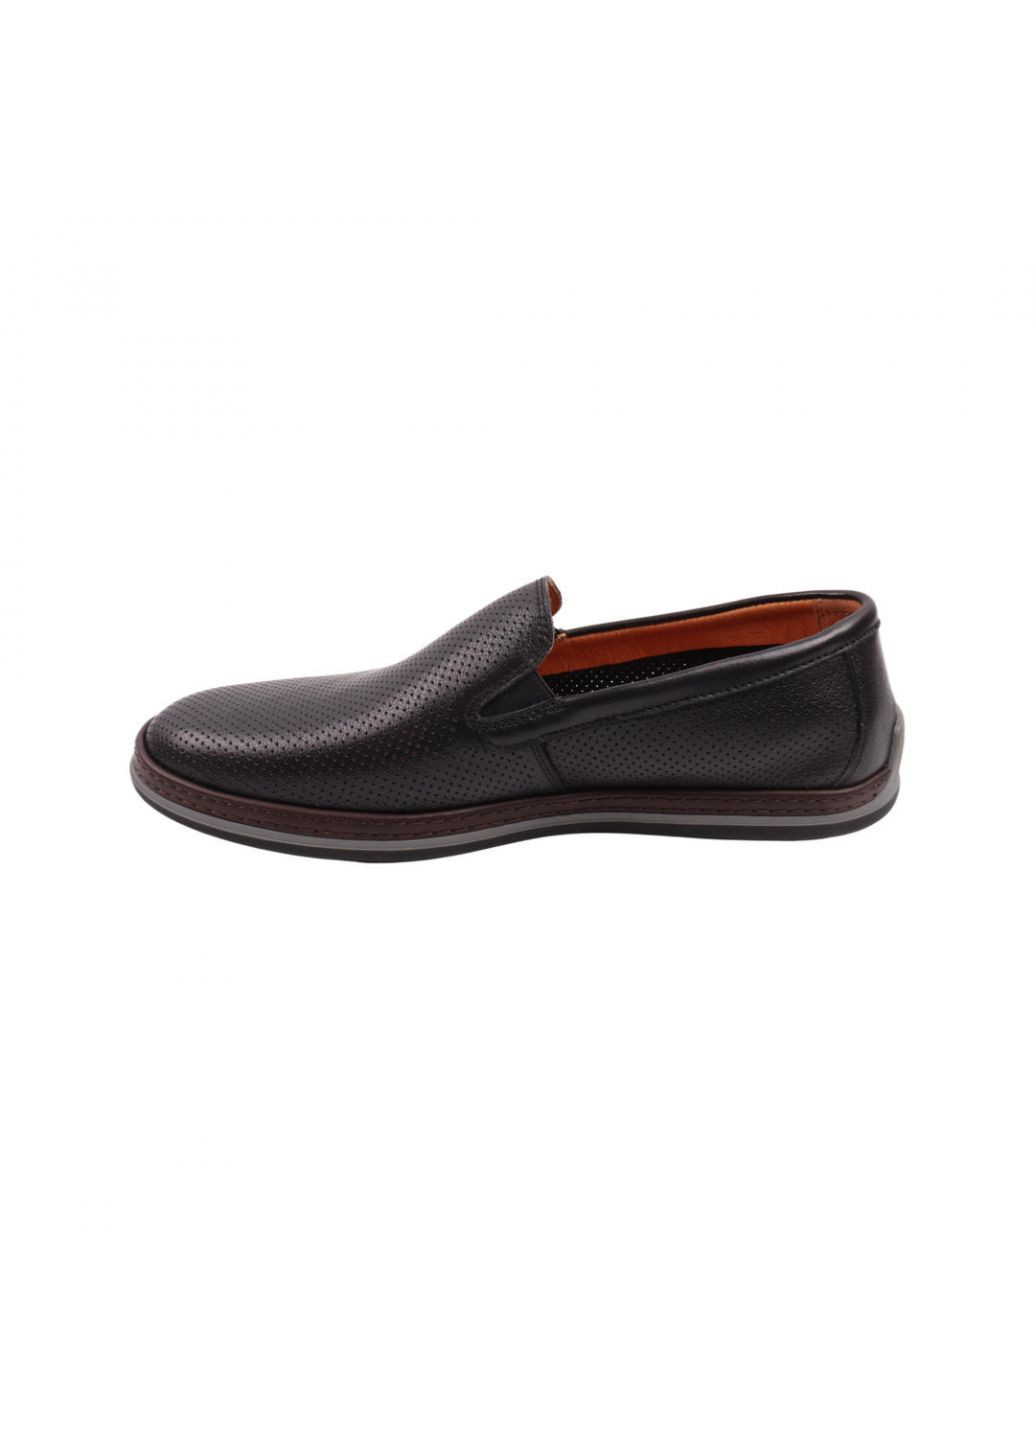 Туфлі чоловічі Lido Marinozi чорні натуральна шкіра Lido Marinozzi 282-22ltc (257440203)